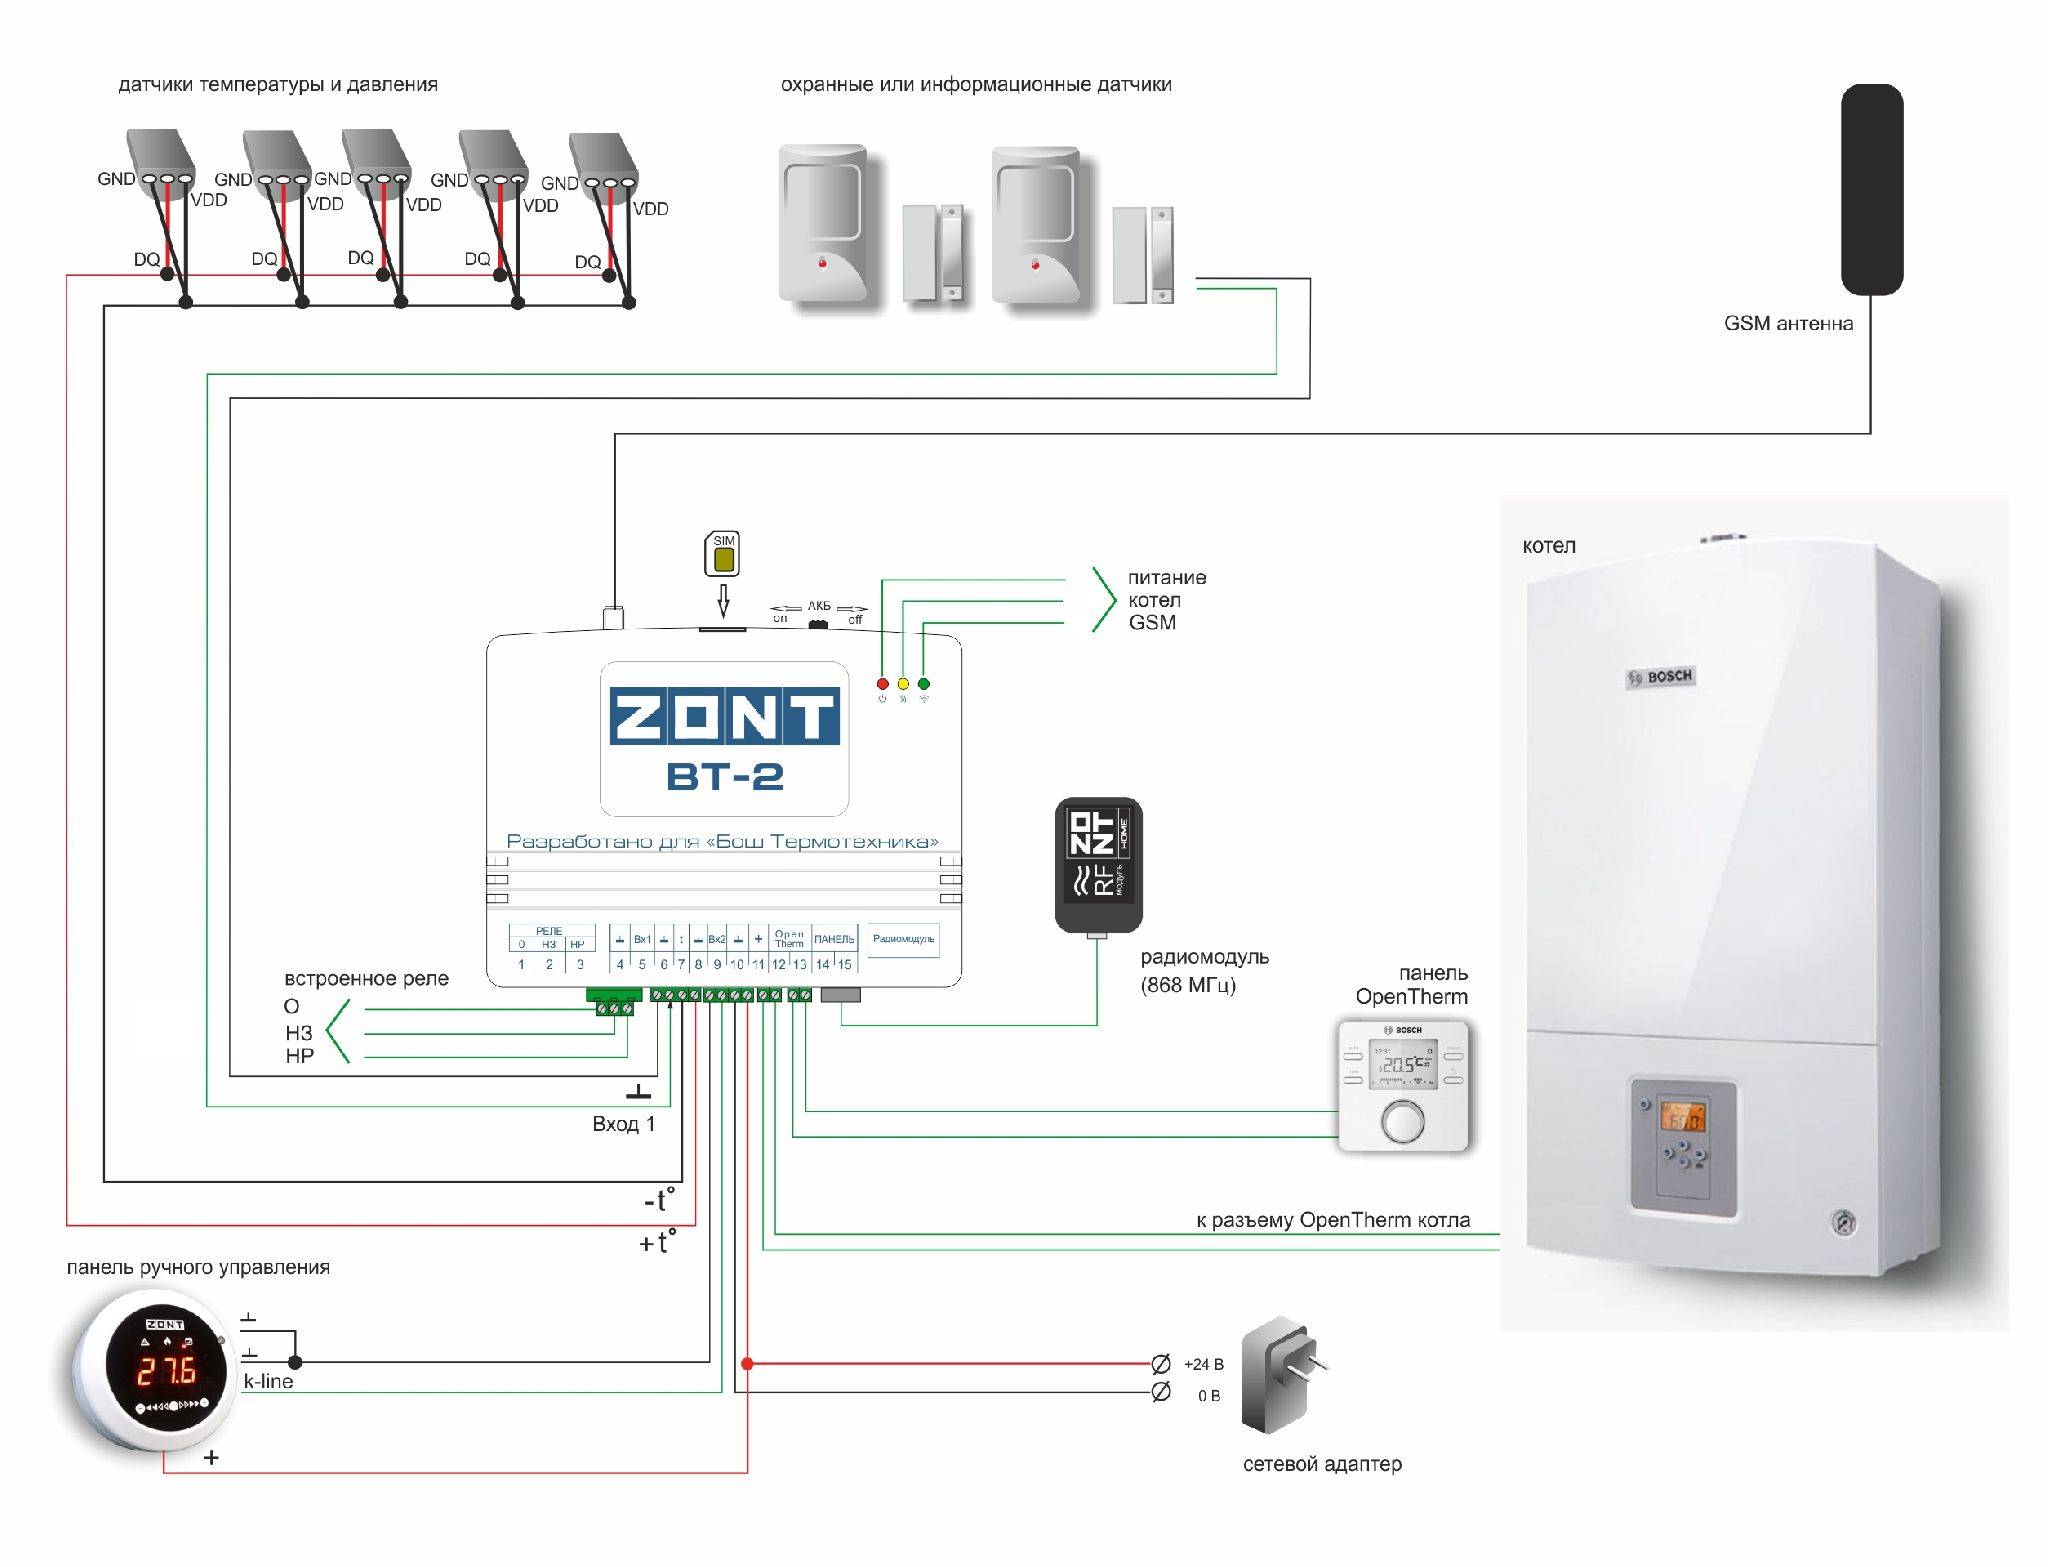 Дистанционное управление газовым и электрическим котлом, контроль отопления через интернет и по gsm каналу